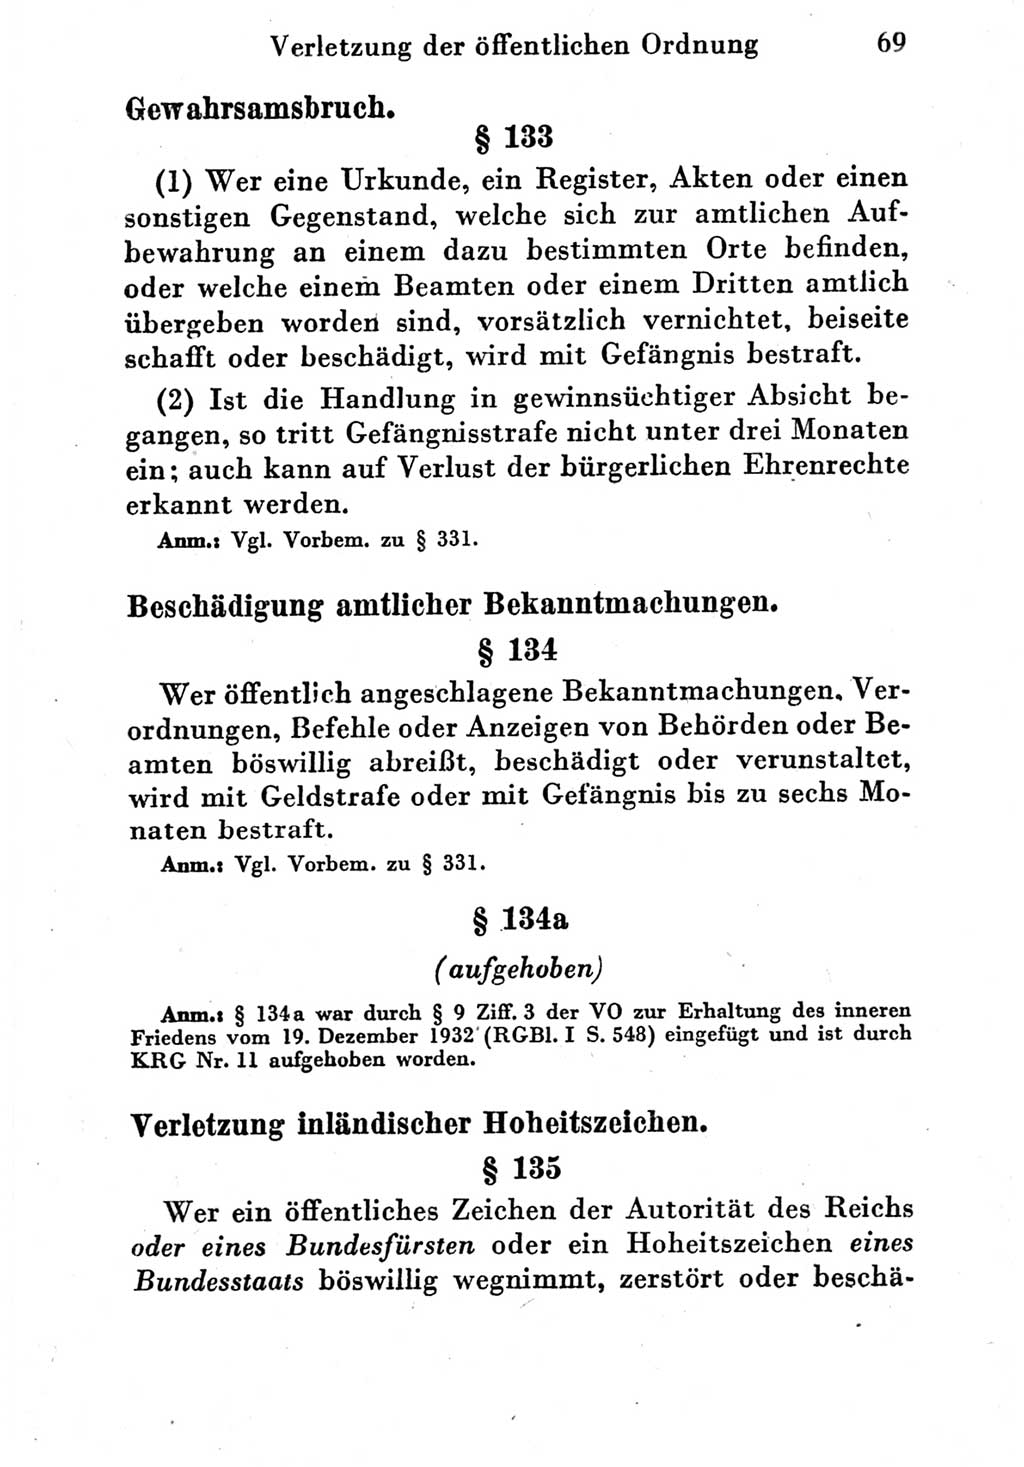 Strafgesetzbuch (StGB) und andere Strafgesetze [Deutsche Demokratische Republik (DDR)] 1951, Seite 69 (StGB Strafges. DDR 1951, S. 69)